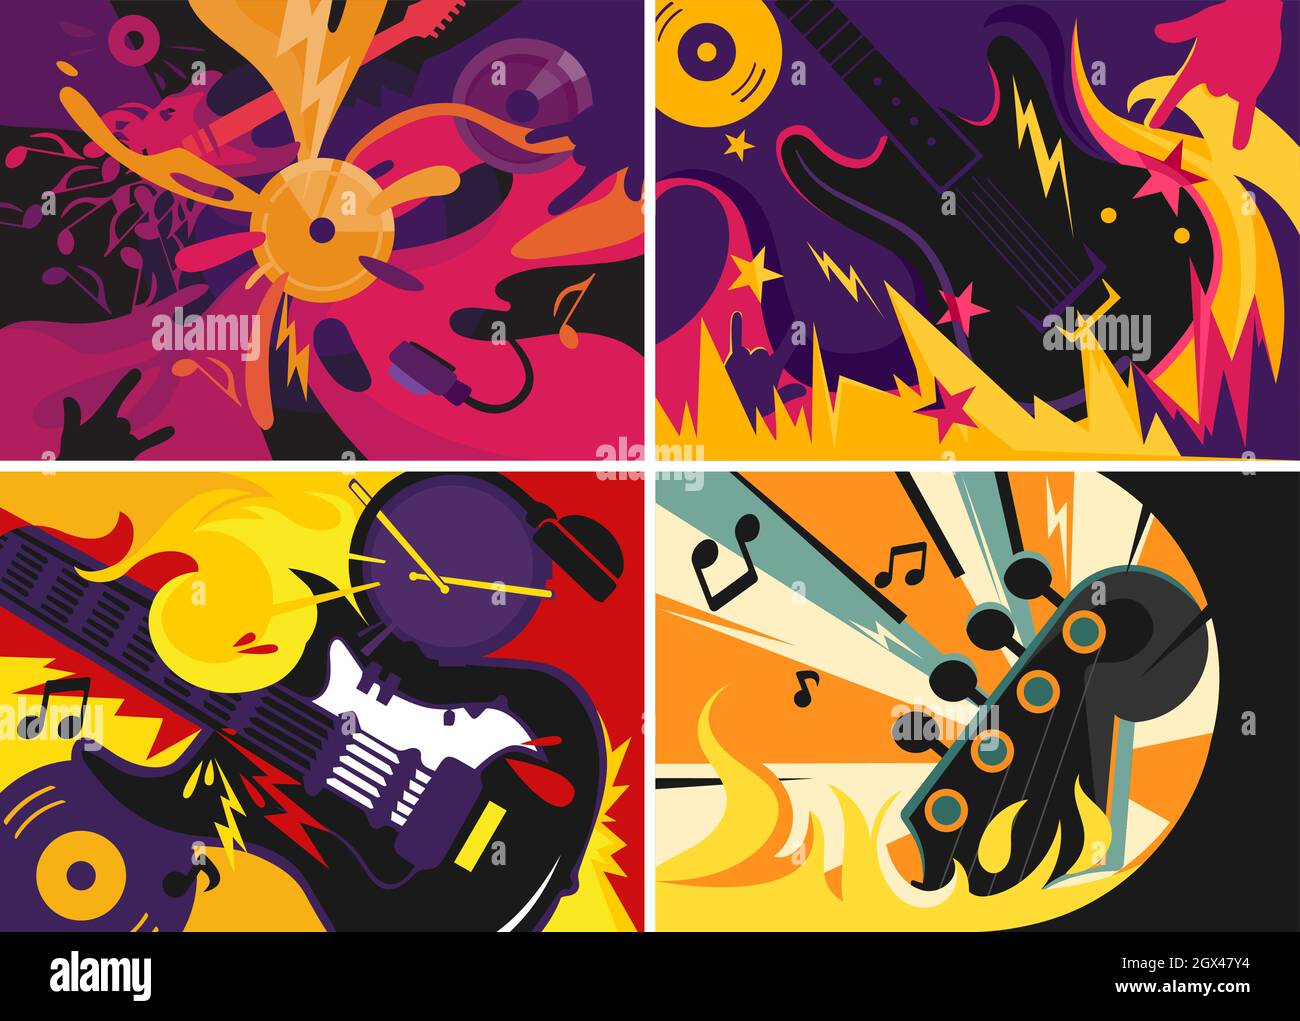 Colección de banners de música rock. Diseños de manteles en estilo abstracto. Ilustración del Vector